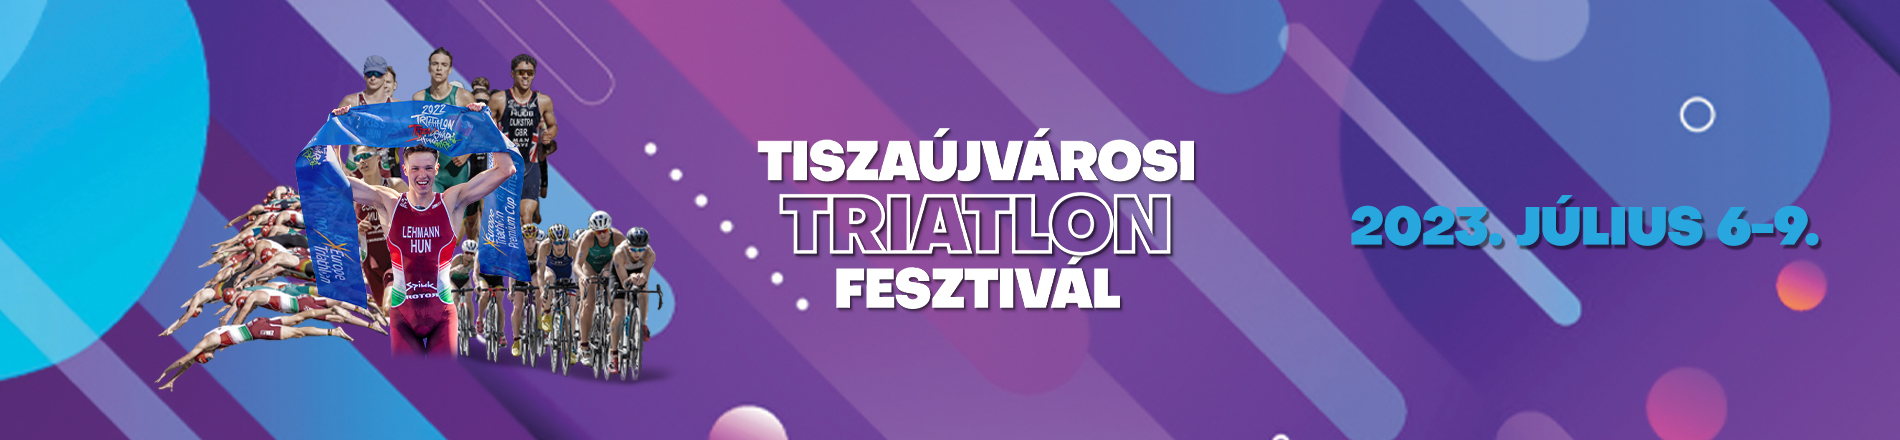 Tiszaújvárosi Triatlon Fesztivál